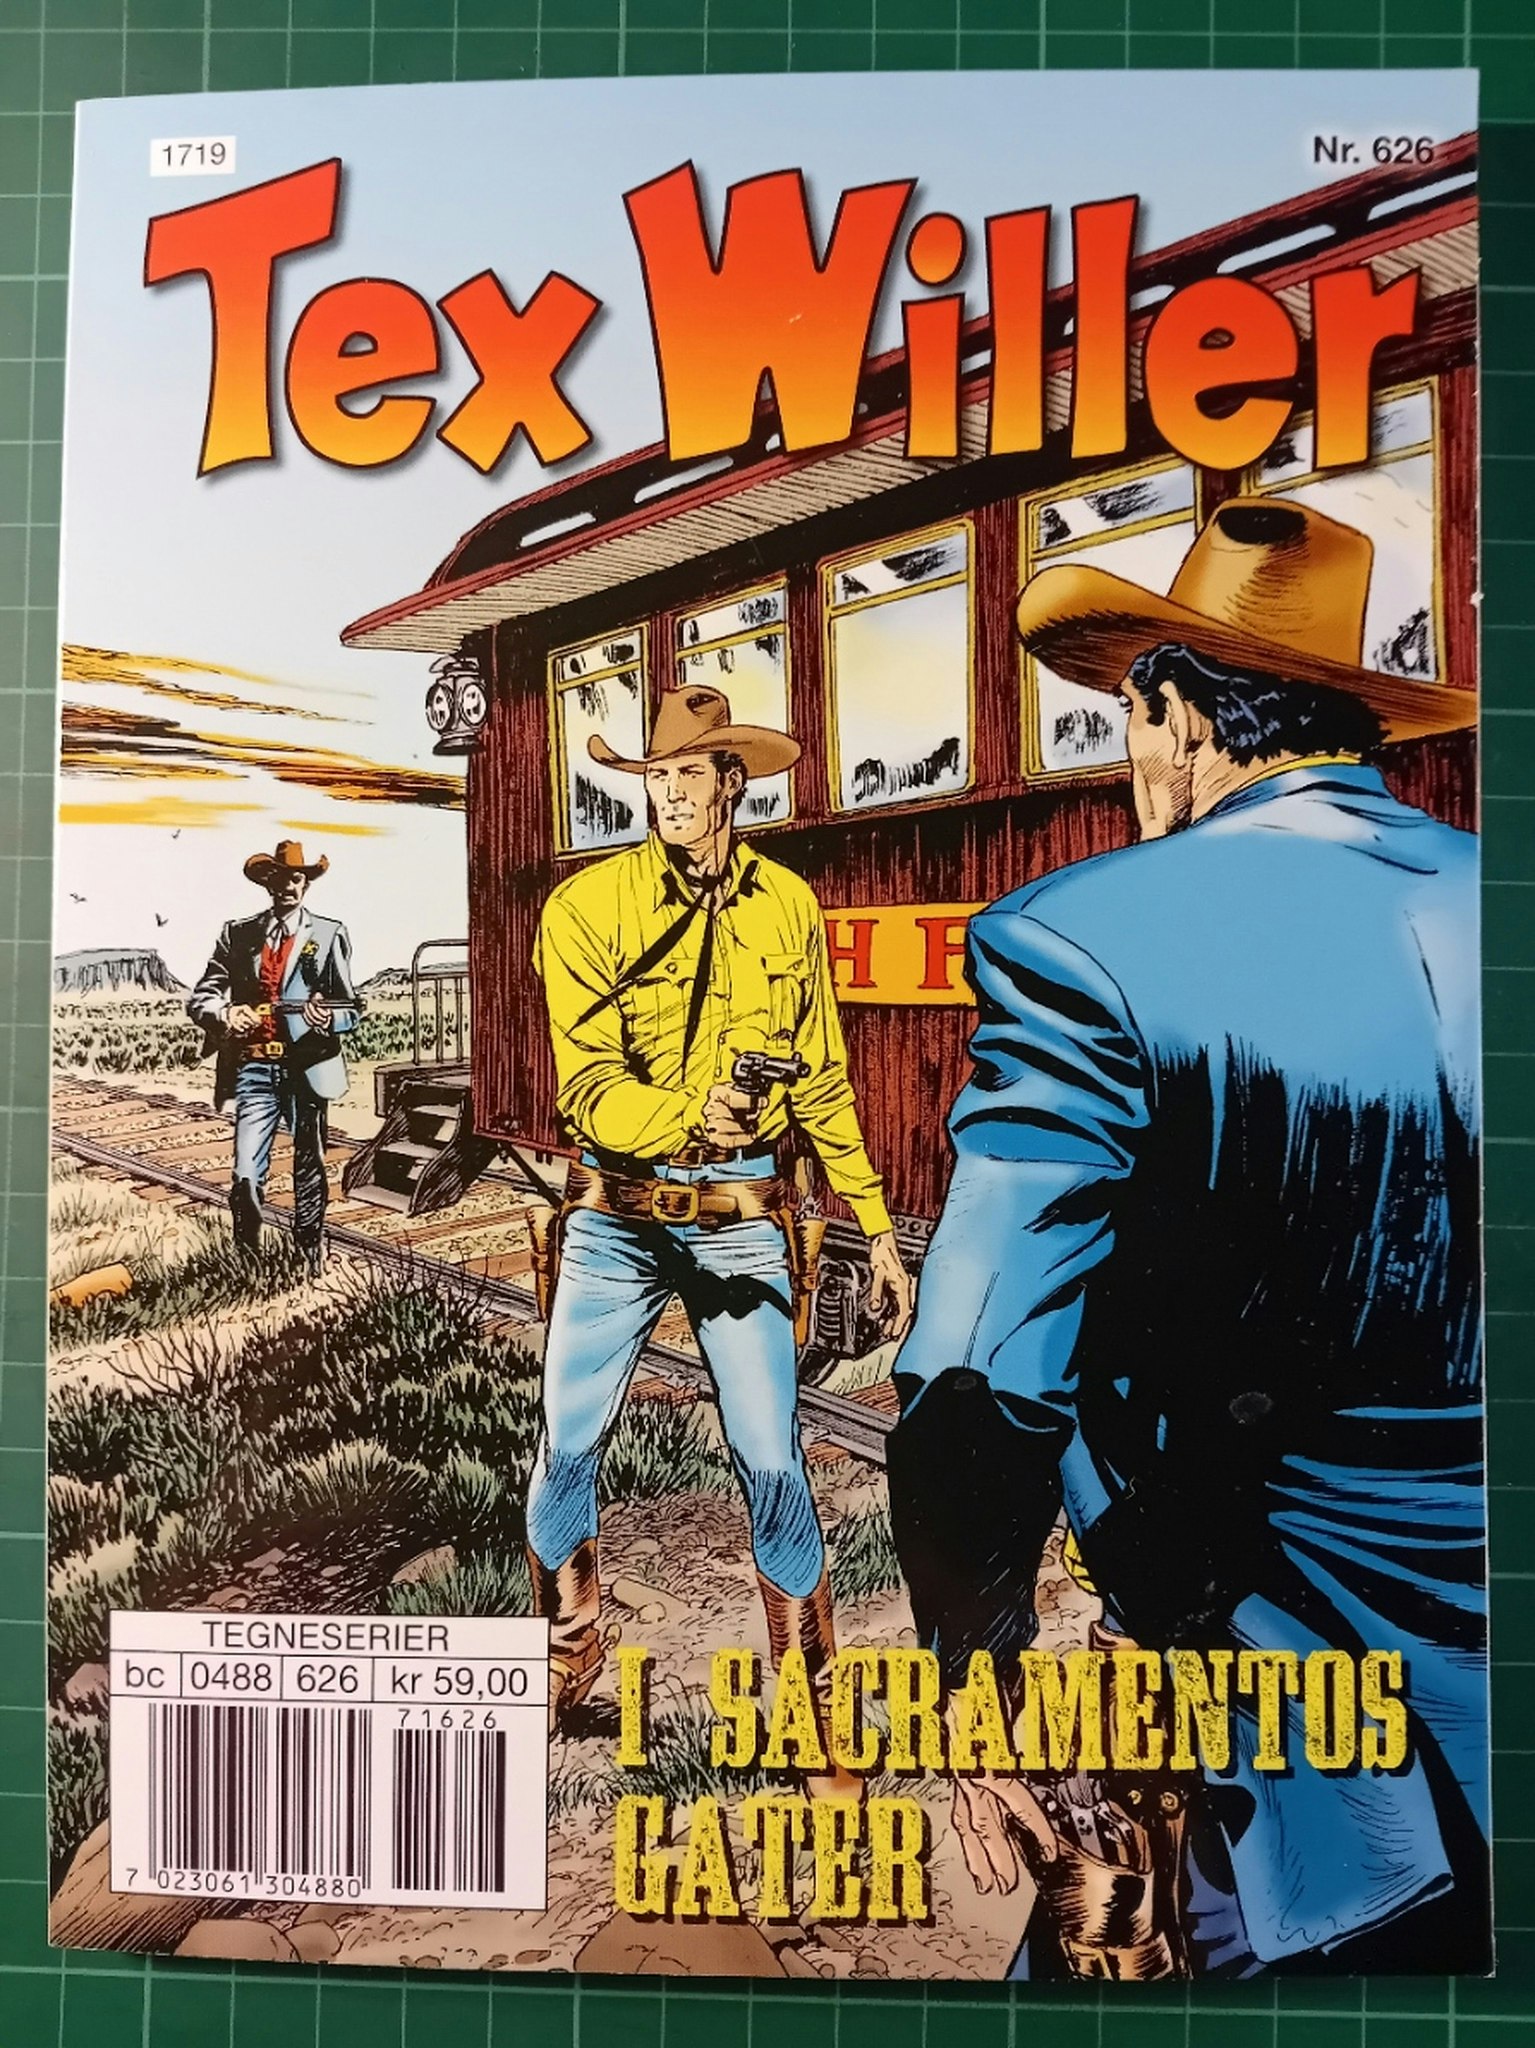 Tex Willer #626